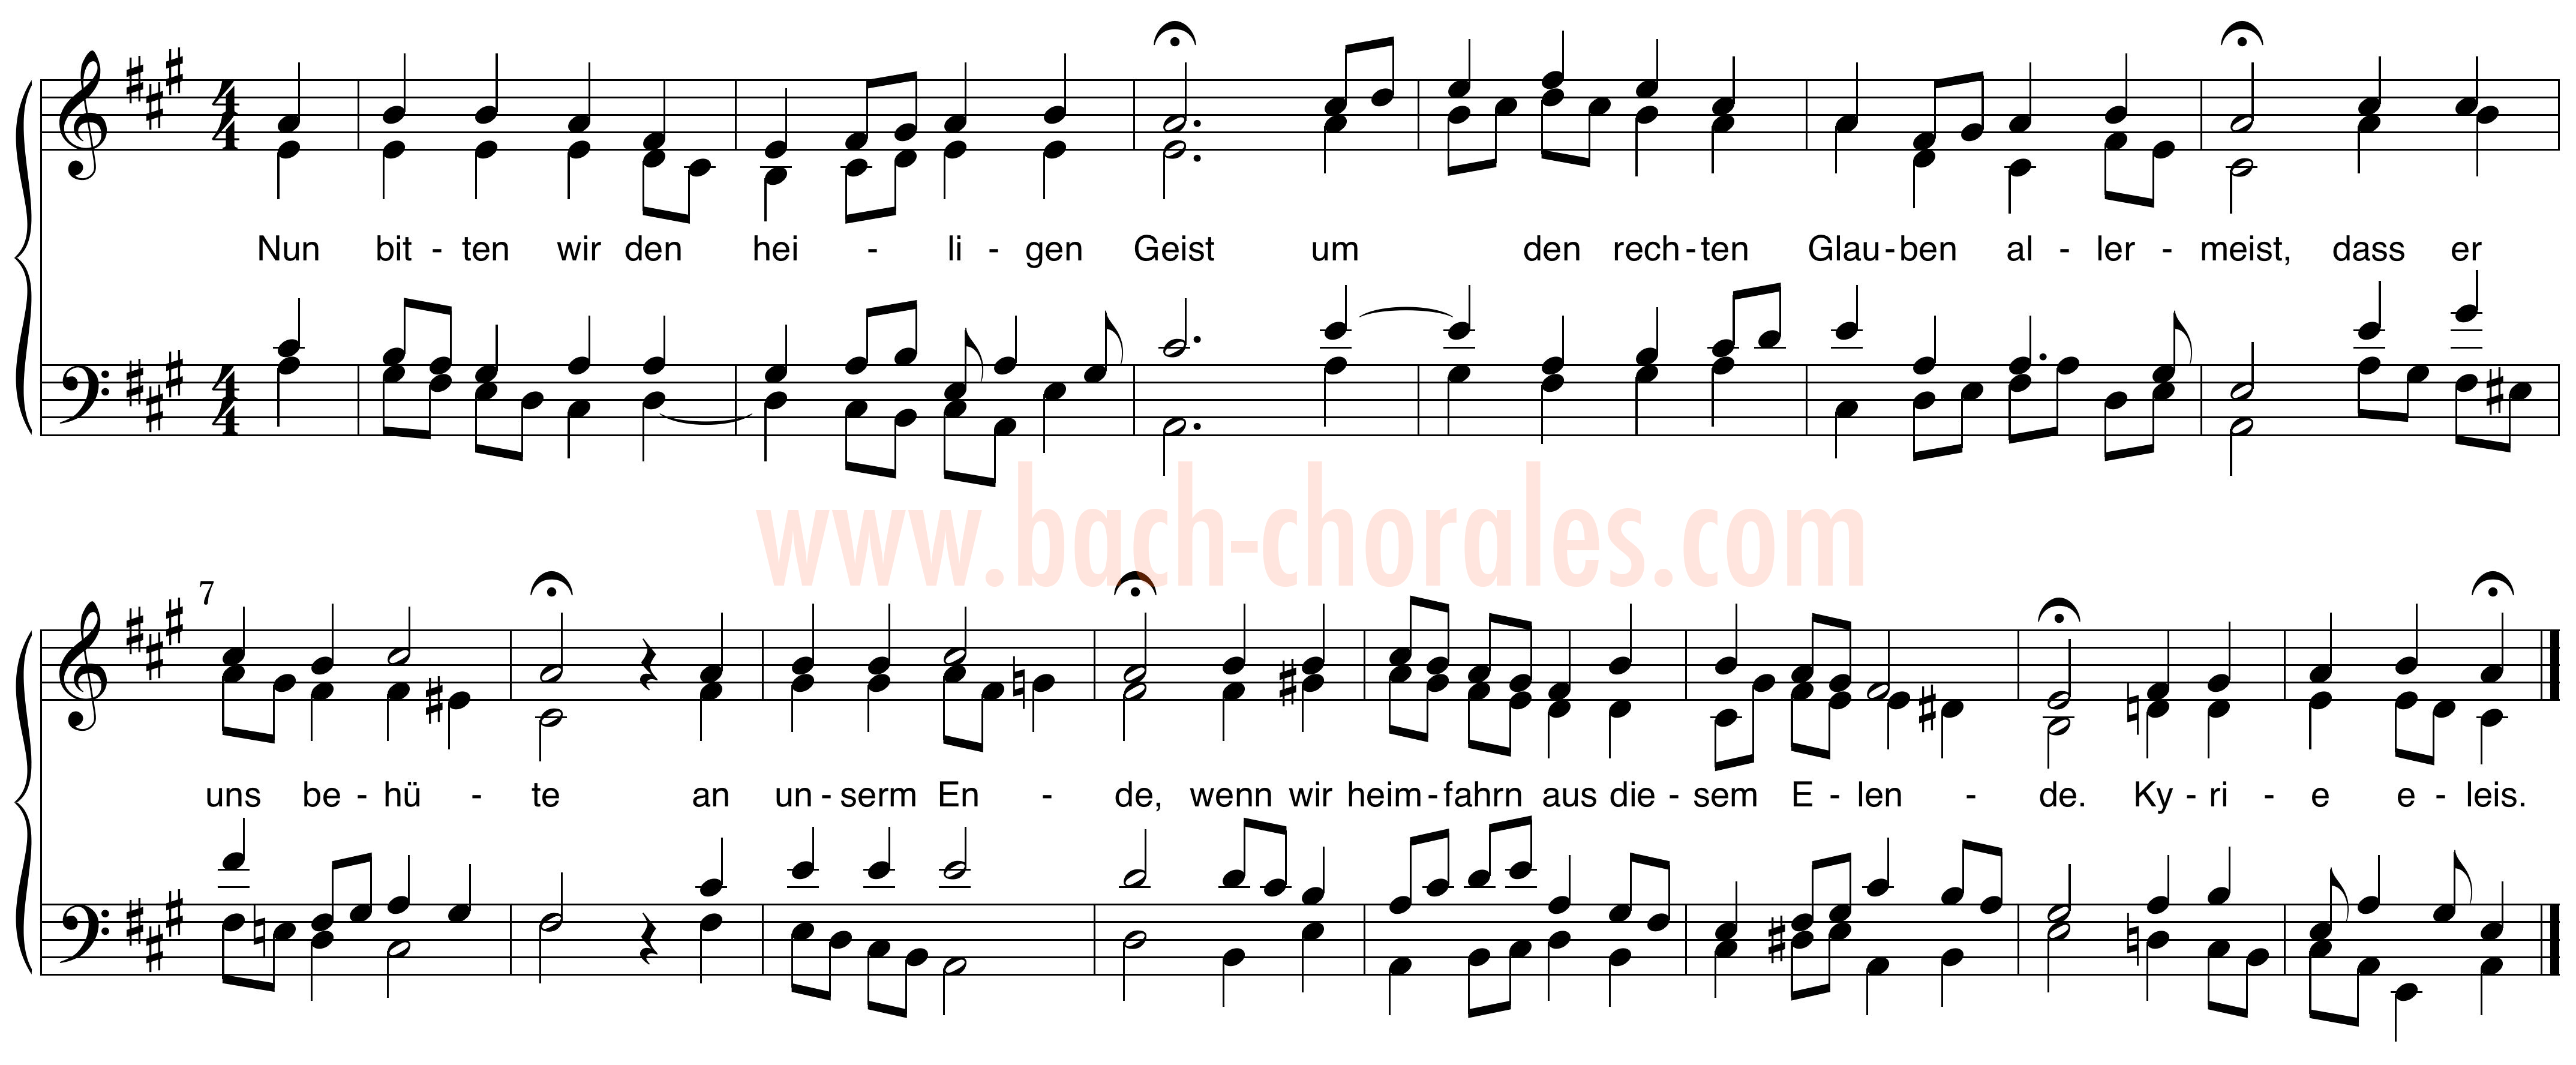 notenbeeld BWV 385 op https://www.bach-chorales.com/